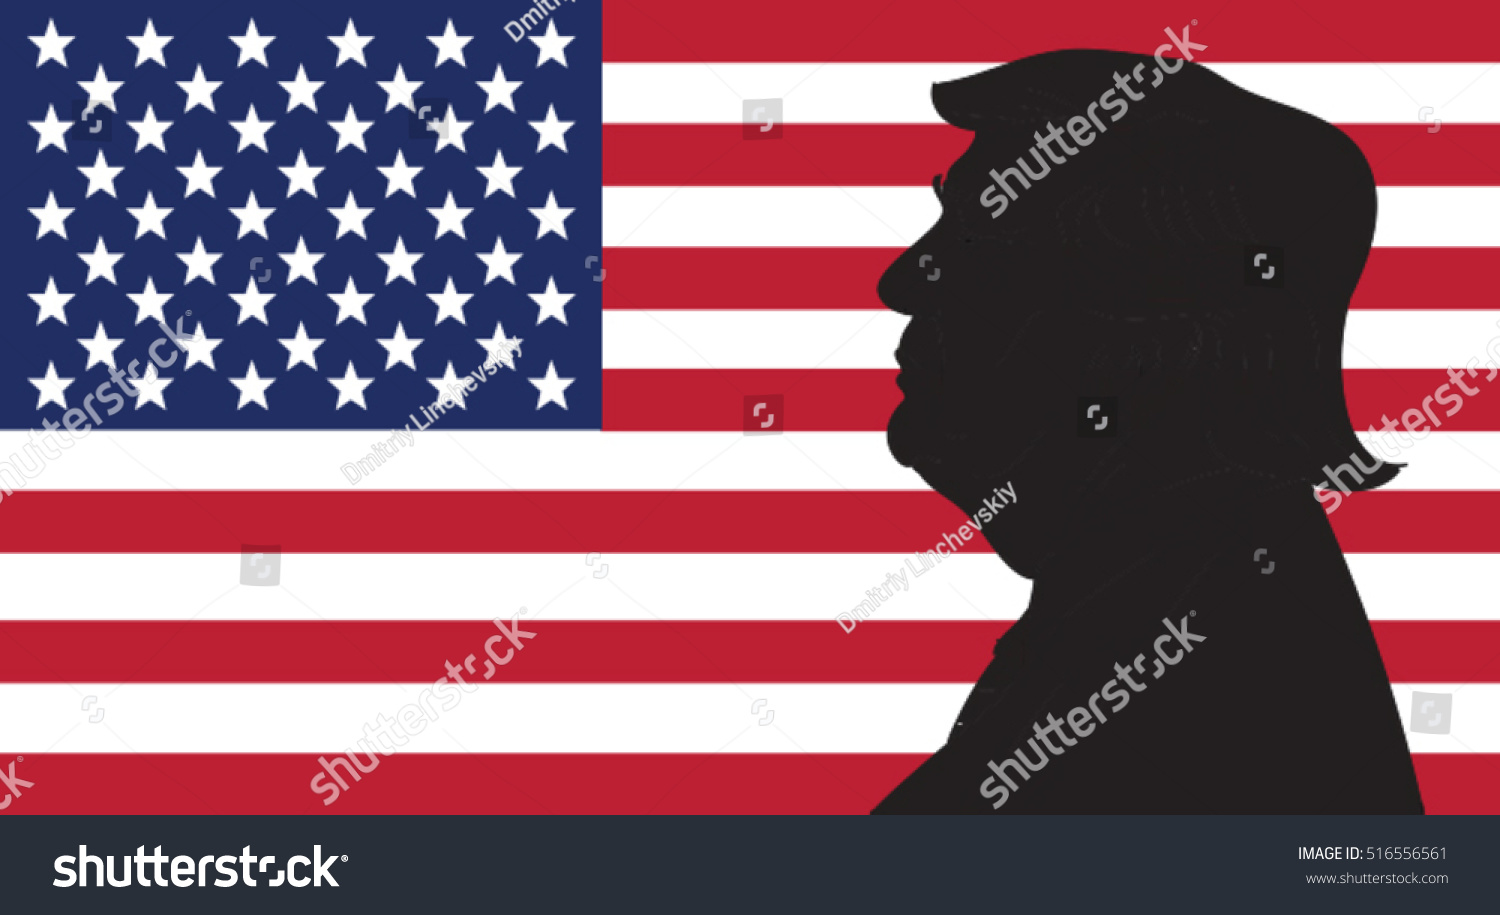 16 Oct 2016 Donald Trump Portrait Stock Vector 516556561 - Shutterstock